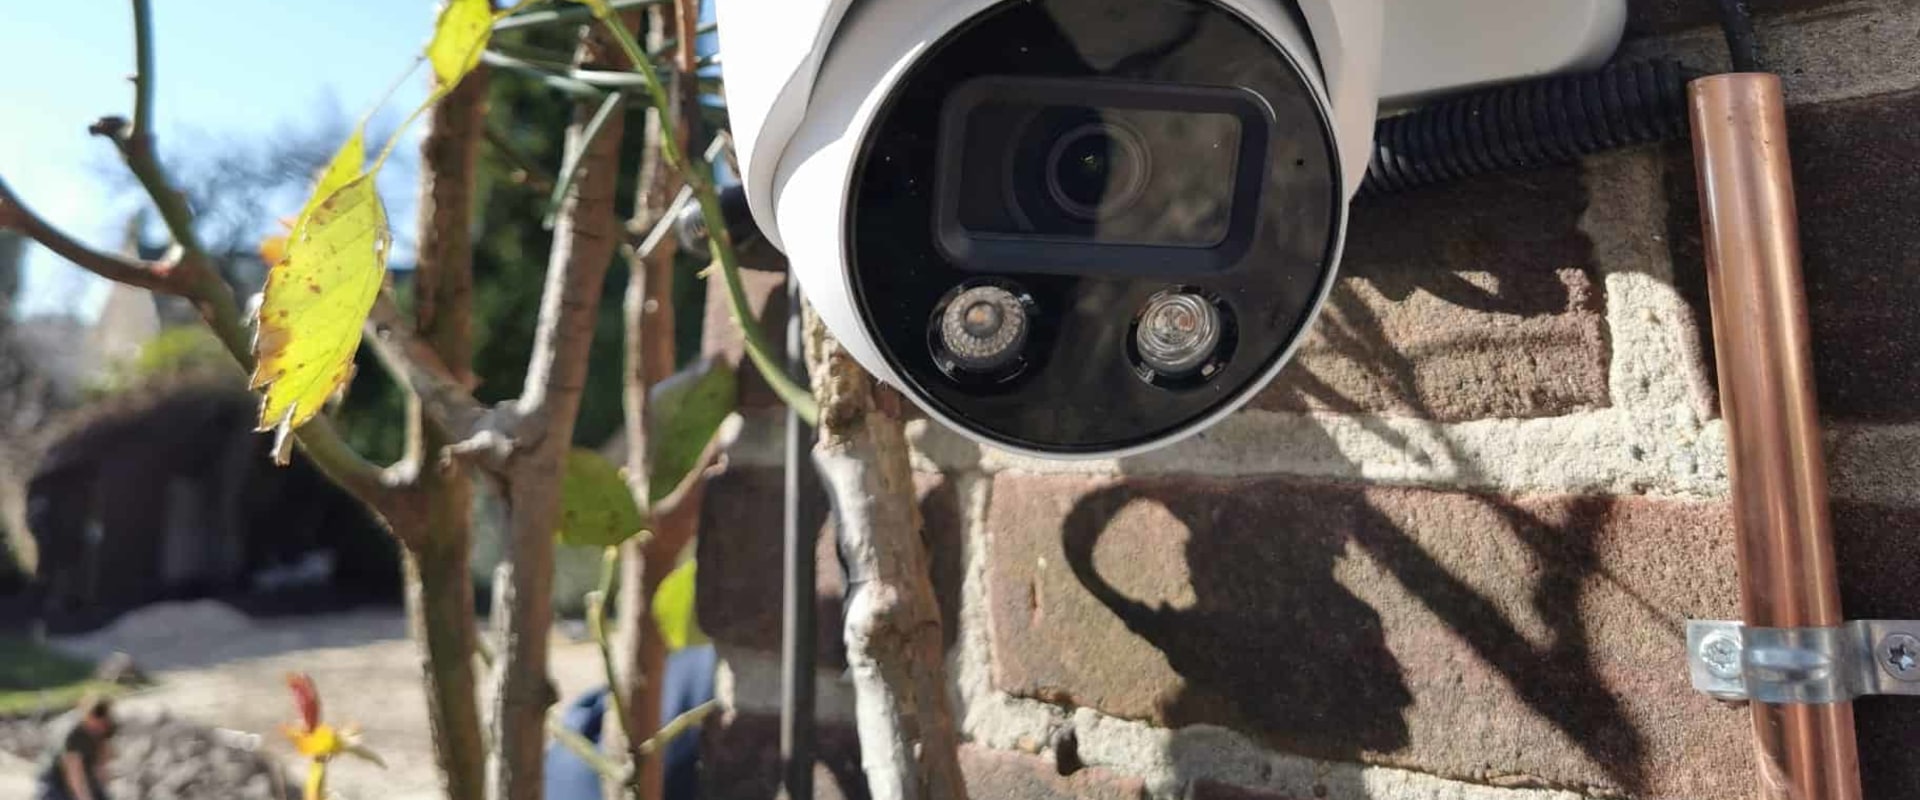 Kunnen beveiligingscamera's's nachts zien?